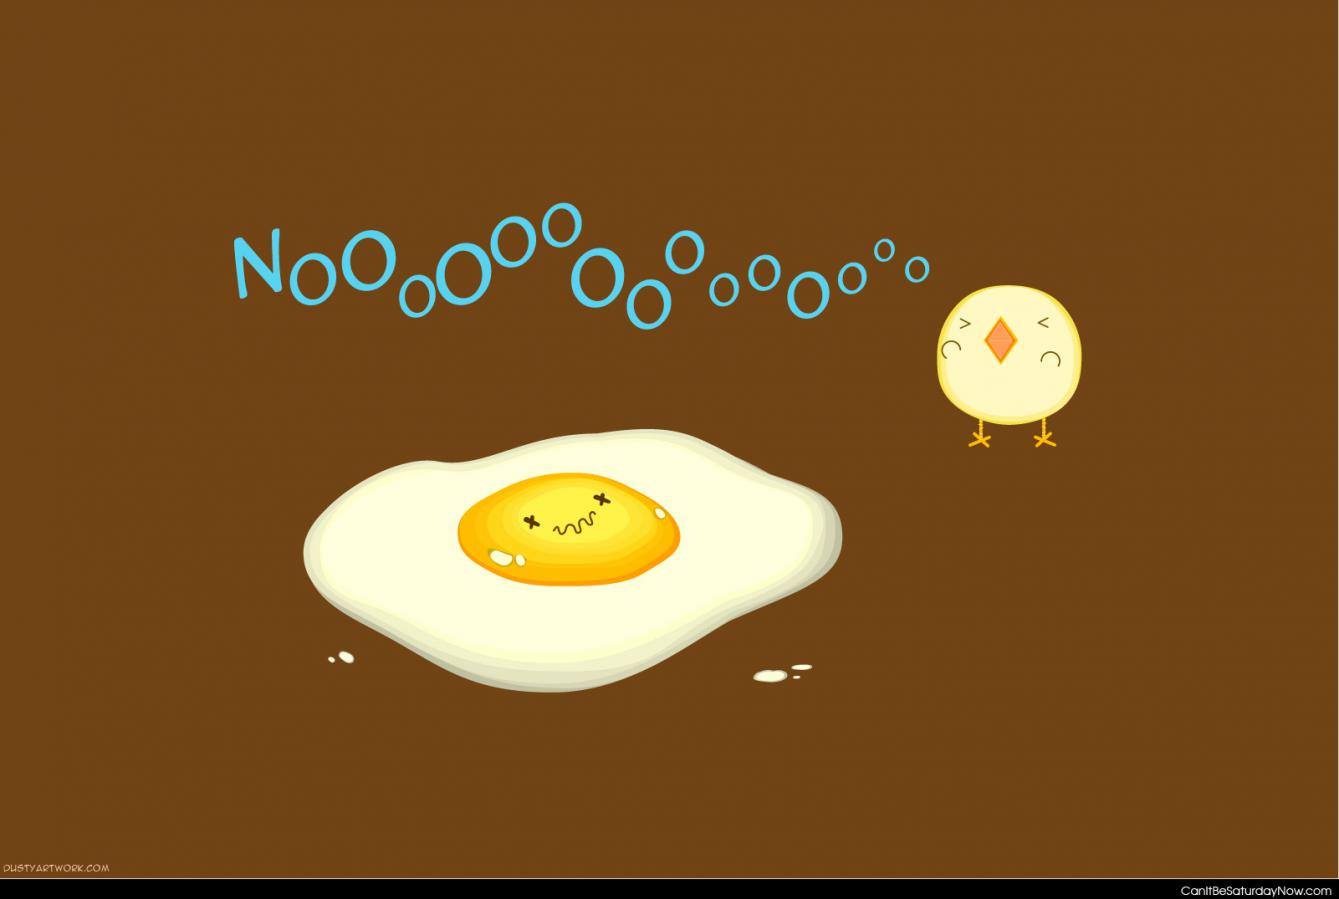 Dead egg - you killed my friend nooooooooooooooooooooo